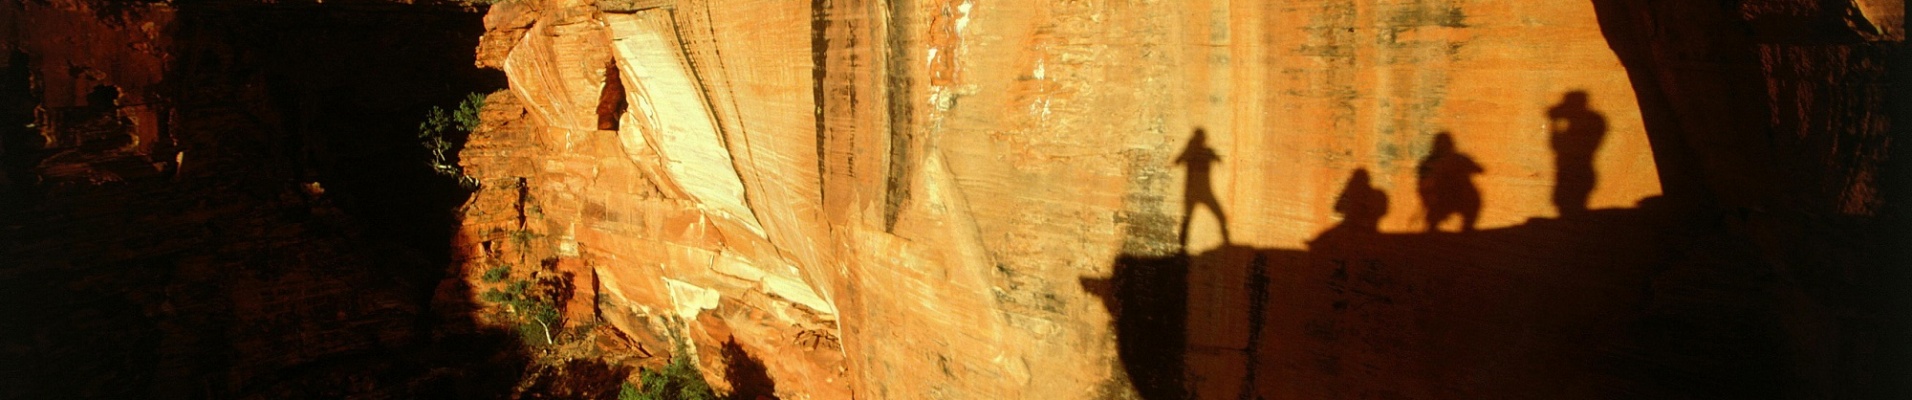 Ombres de randonneurs sur un rocher de Kings Canyon